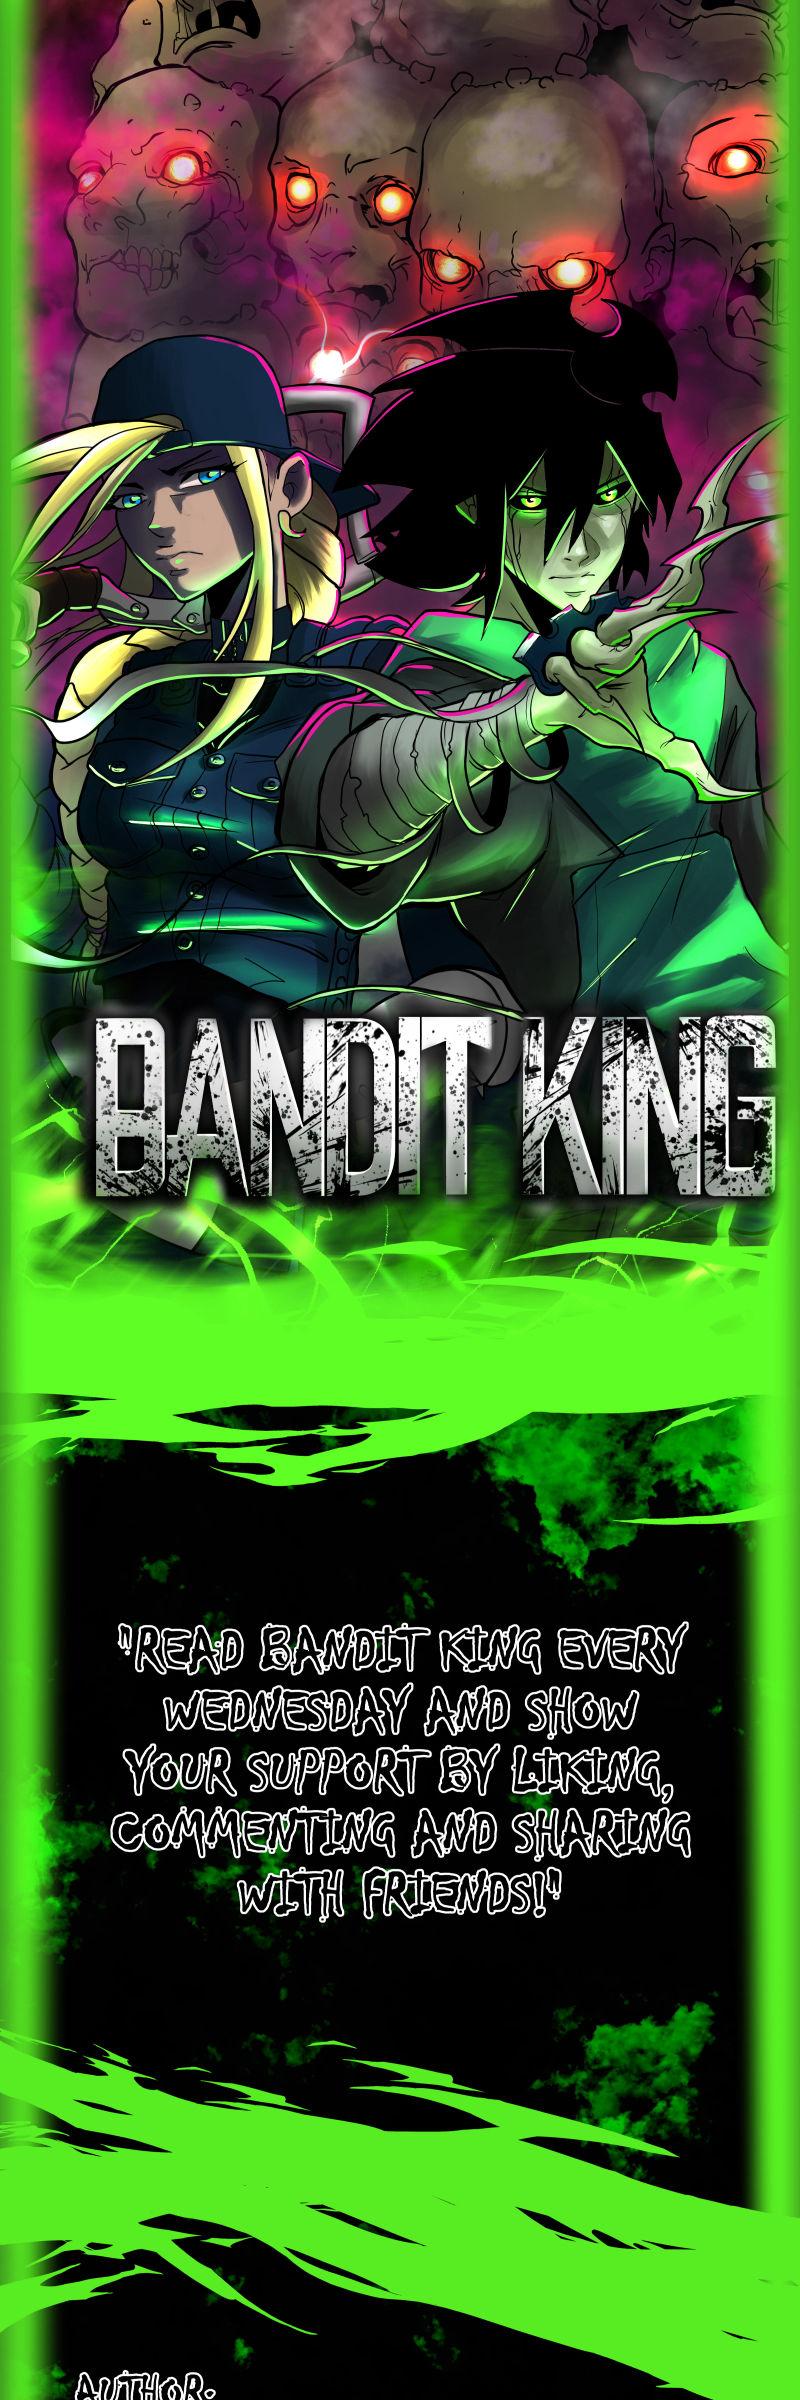 Bandit King 17 08